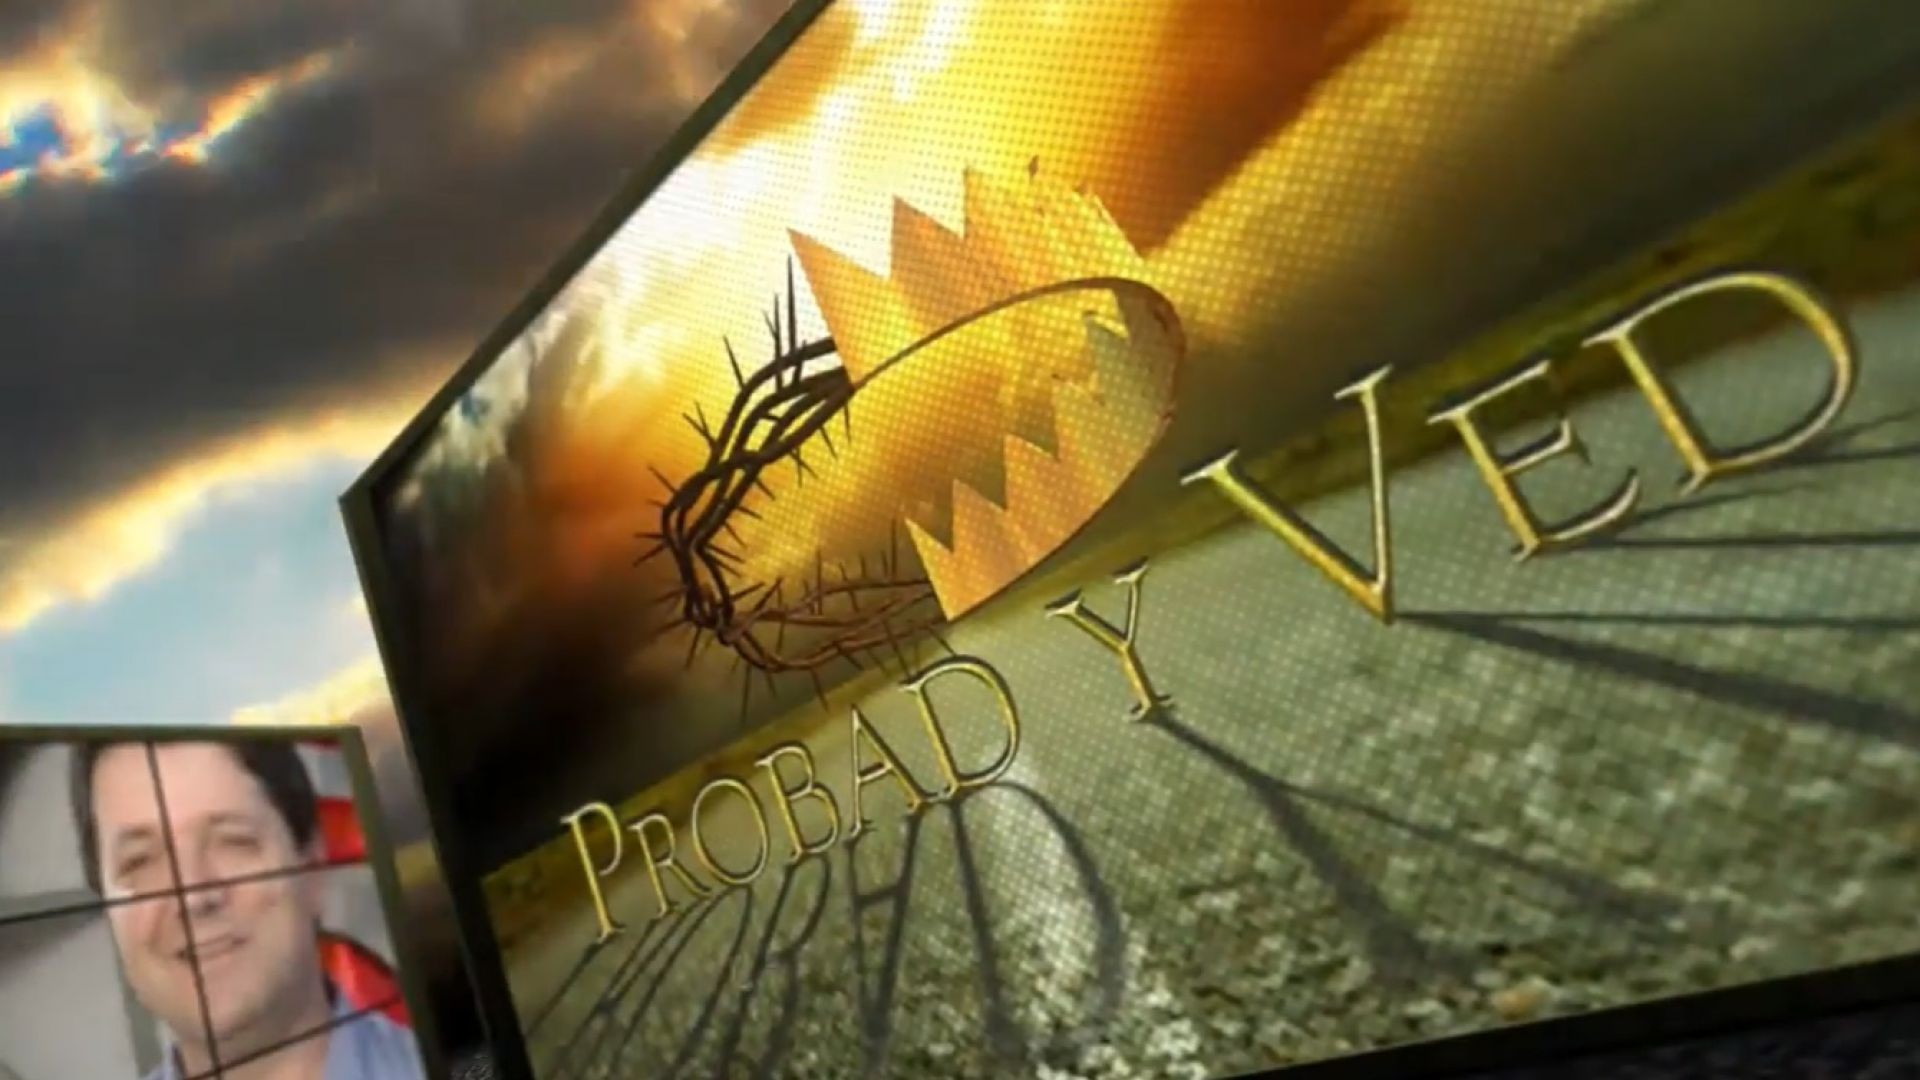 ⁣Probad y Ved 2012 - Del campo para Dios